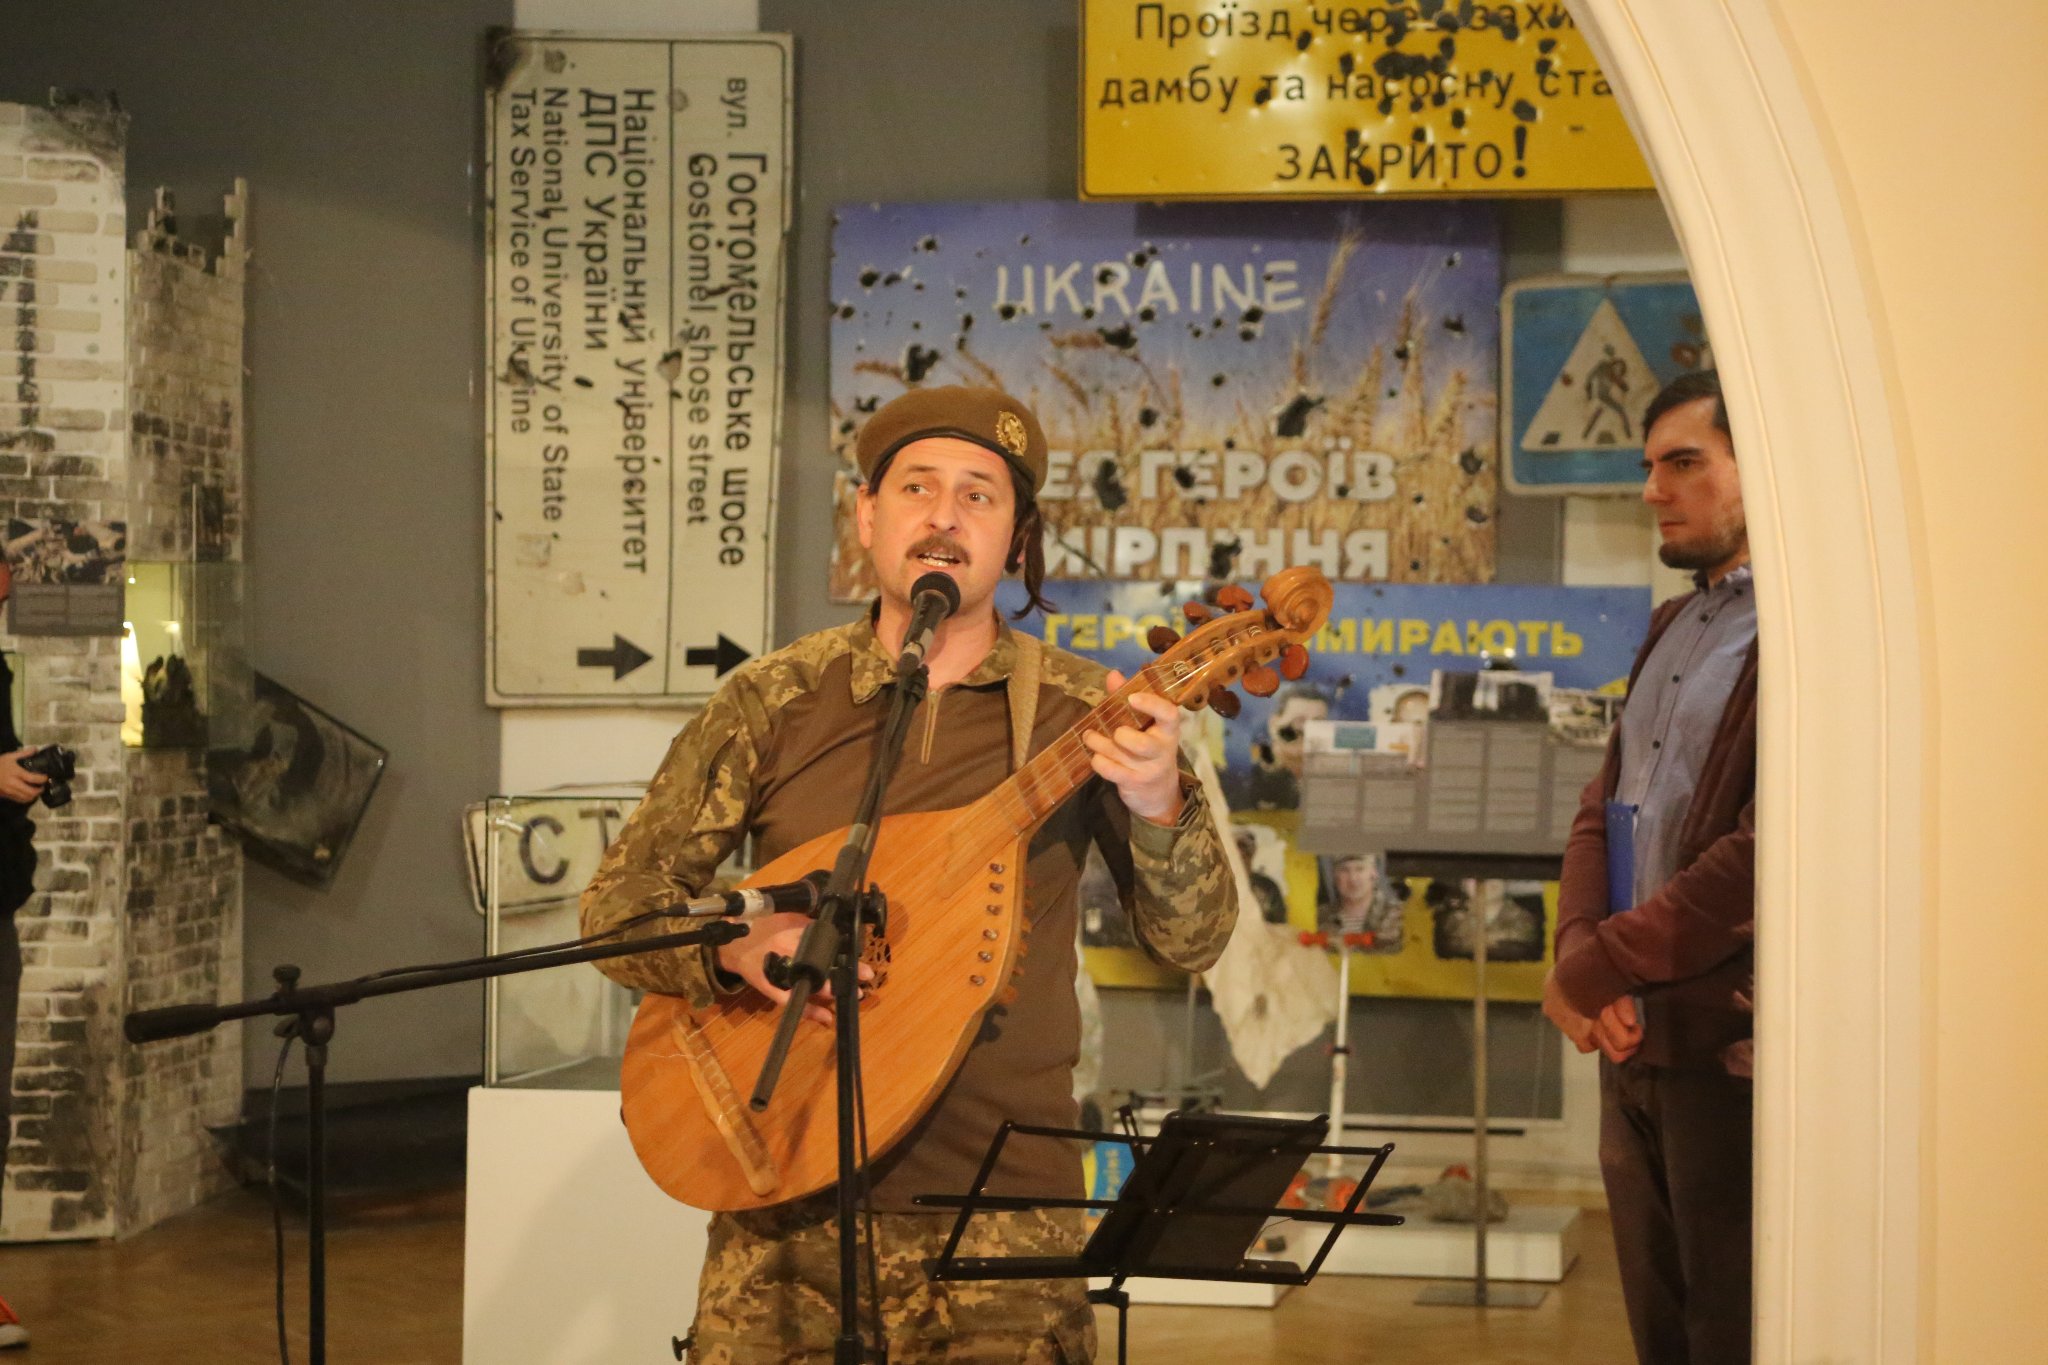 Singer serving in Ukraine’s army wins Shevchenko National Prize for Ukrainian Revolution Songs album